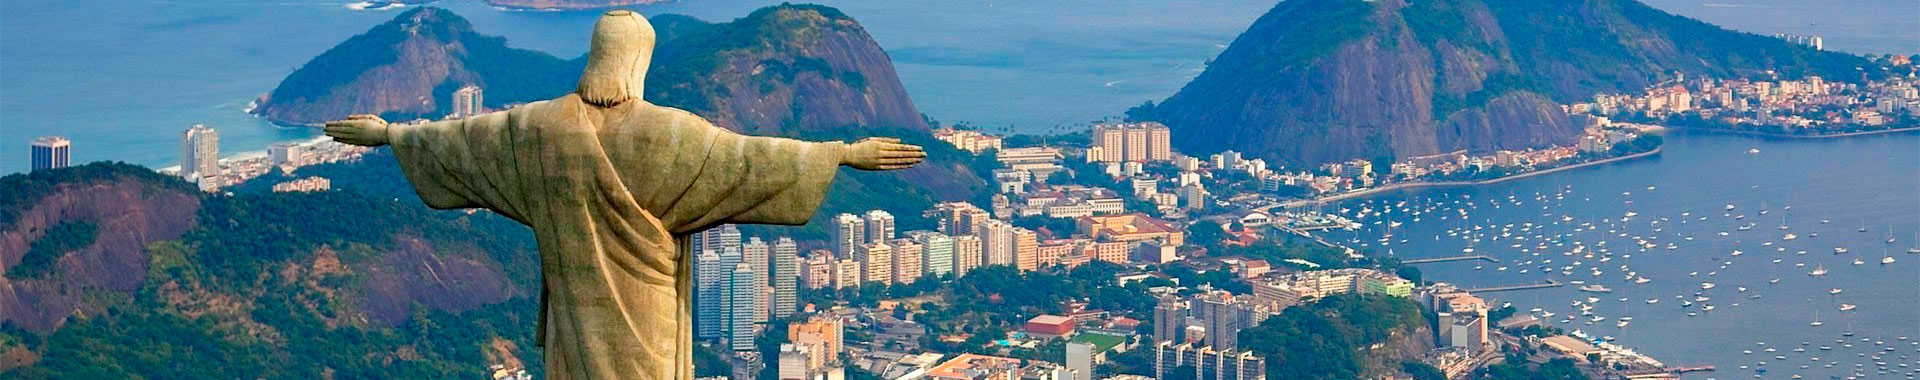 Brasil - Rio - Paquetes - Magico